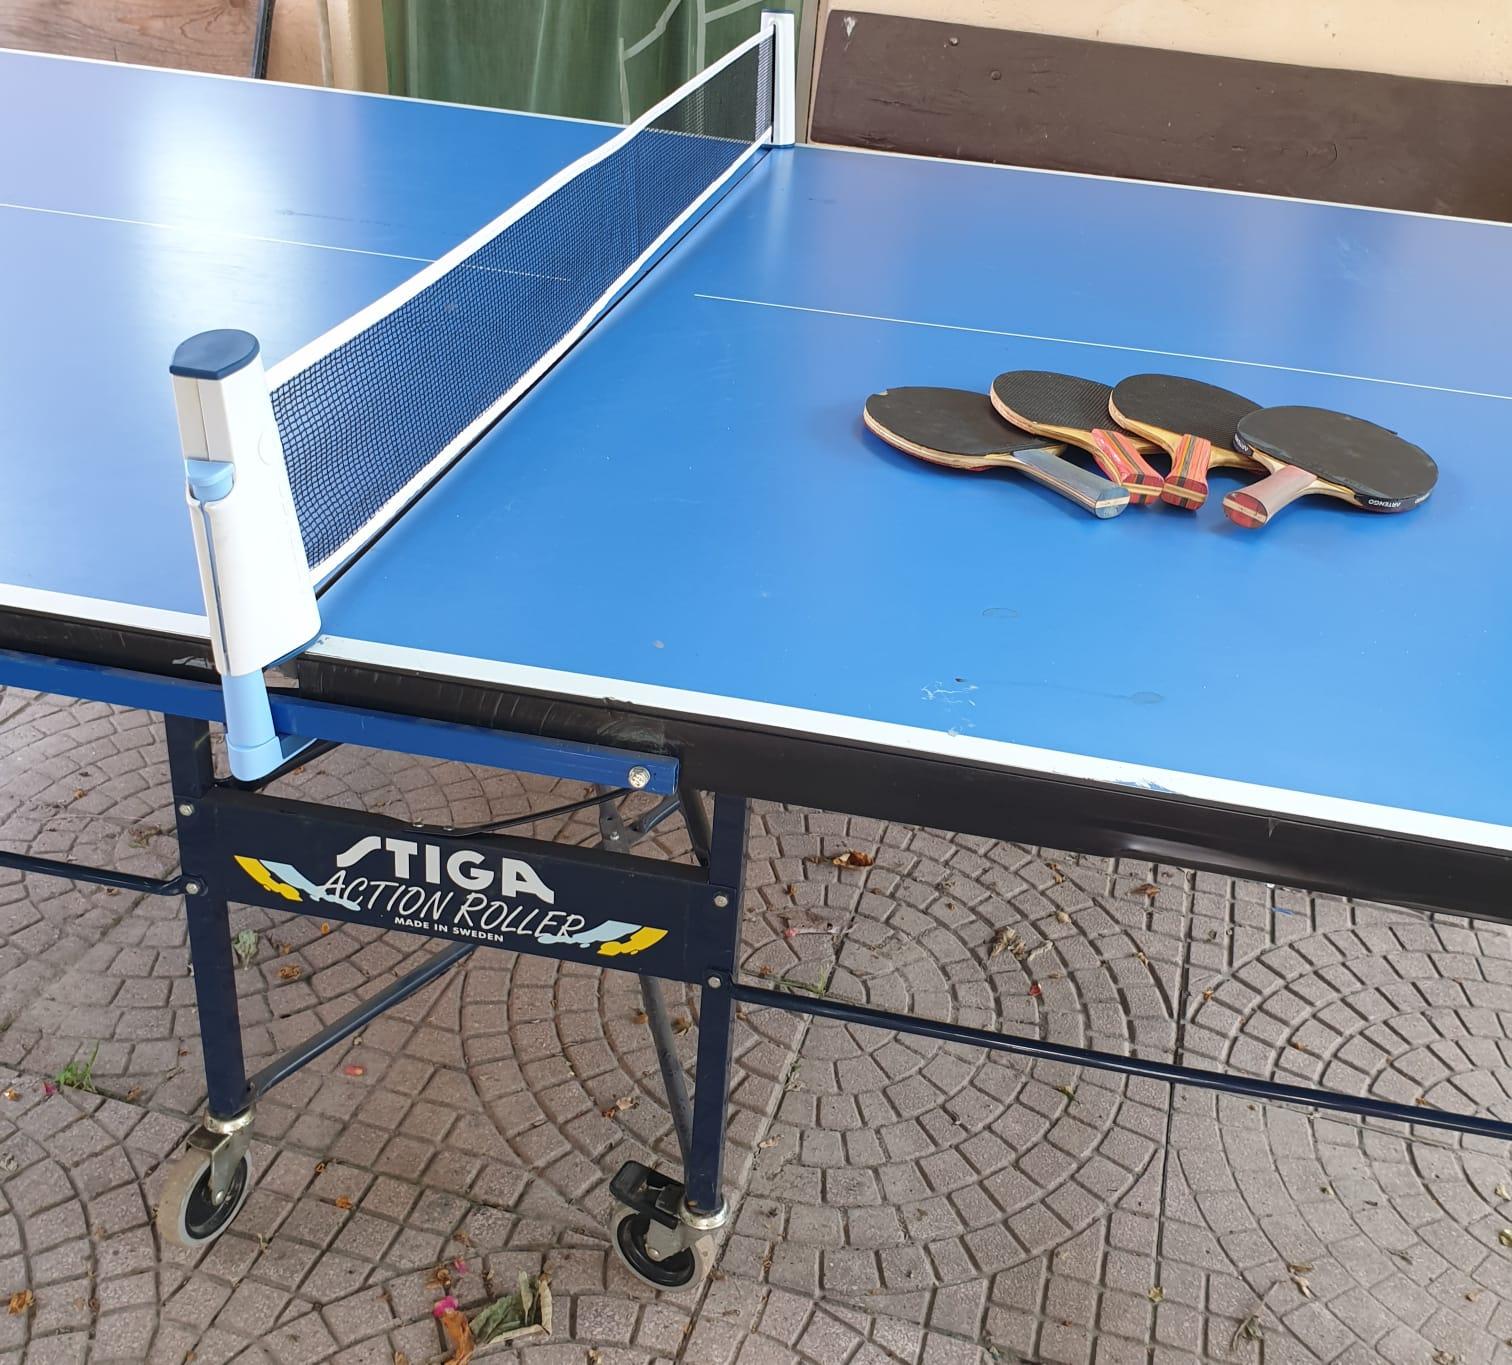 Tavolo Da Ping Pong Stiga